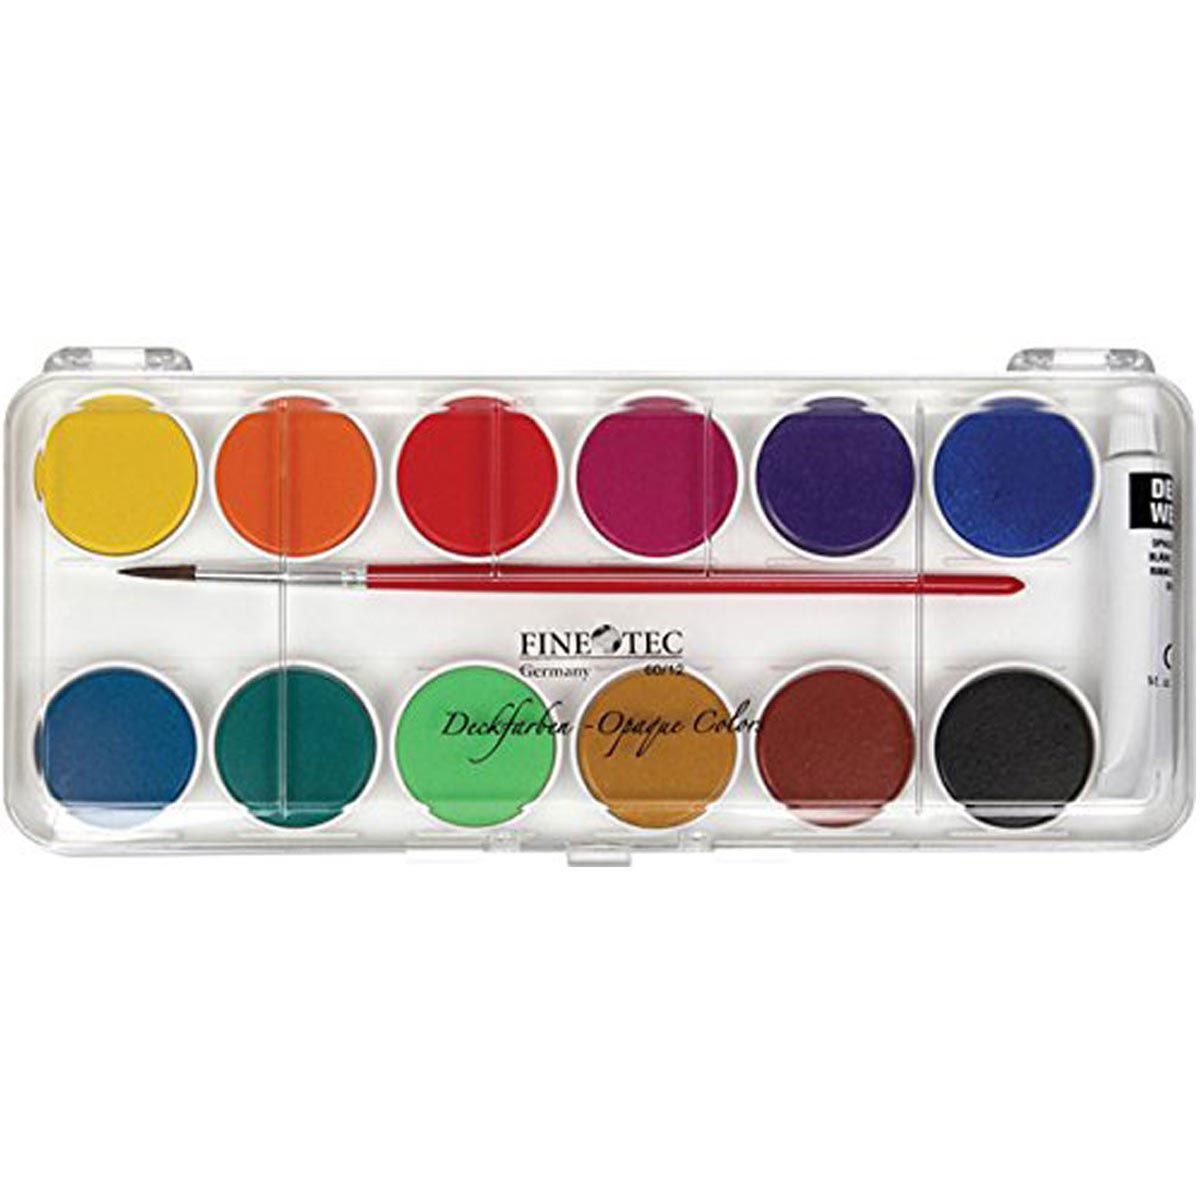 Finetec FW6012 Opaque Watercolour - 12 Colour Pan Set with Plastic Lid